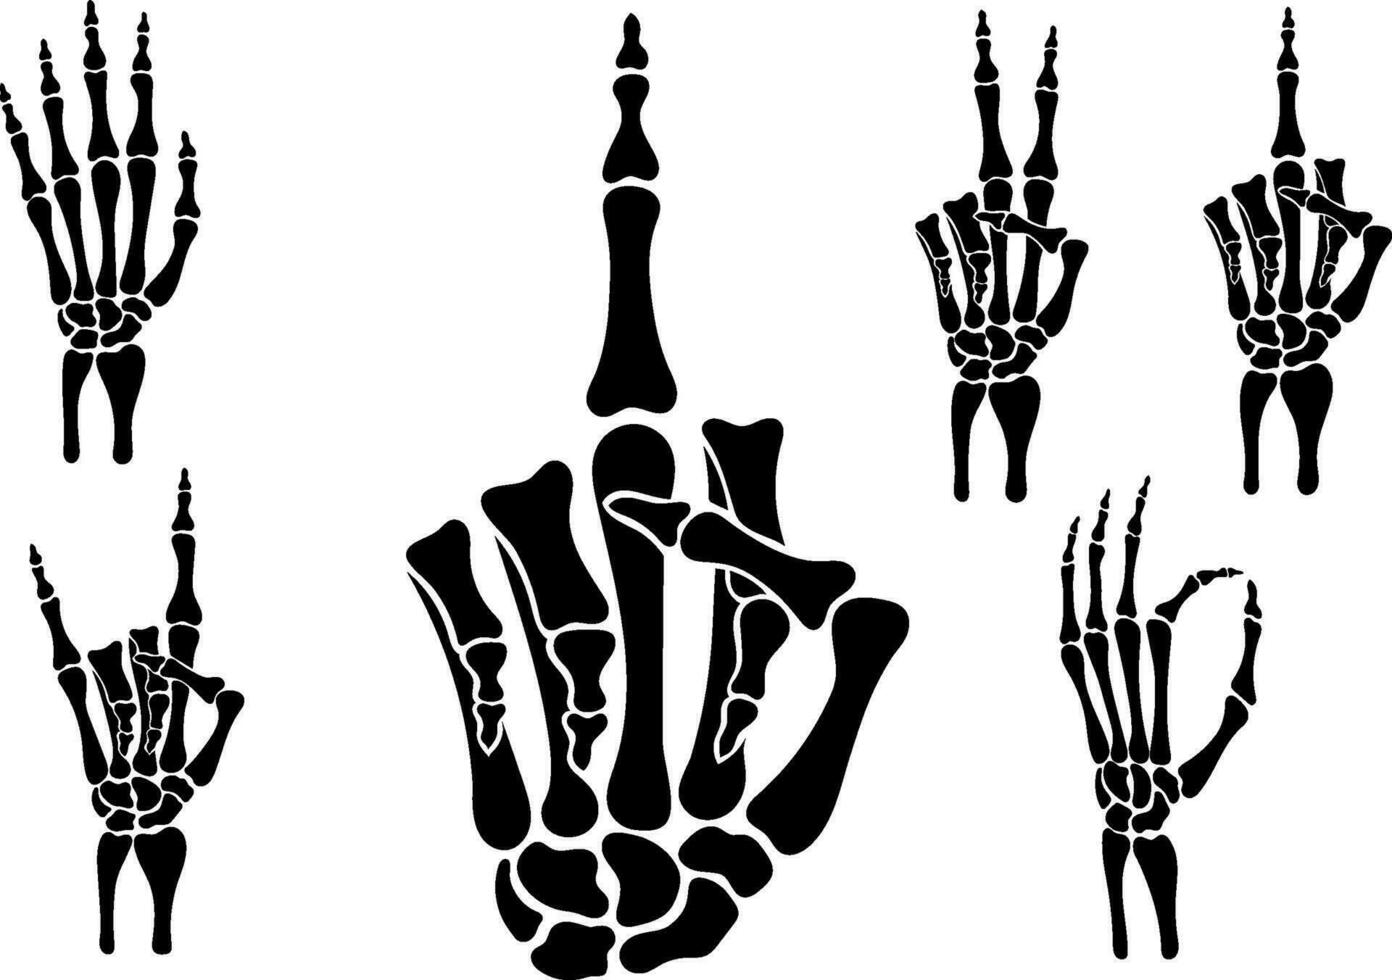 Skeleton hands, Bones hand, middle finger, Vintage elements, Print for t-shirt, hand bones set vector, Vector skeleton hand, Bones Peace, Rock, stop, middle finger, fist power, Vector art illustration